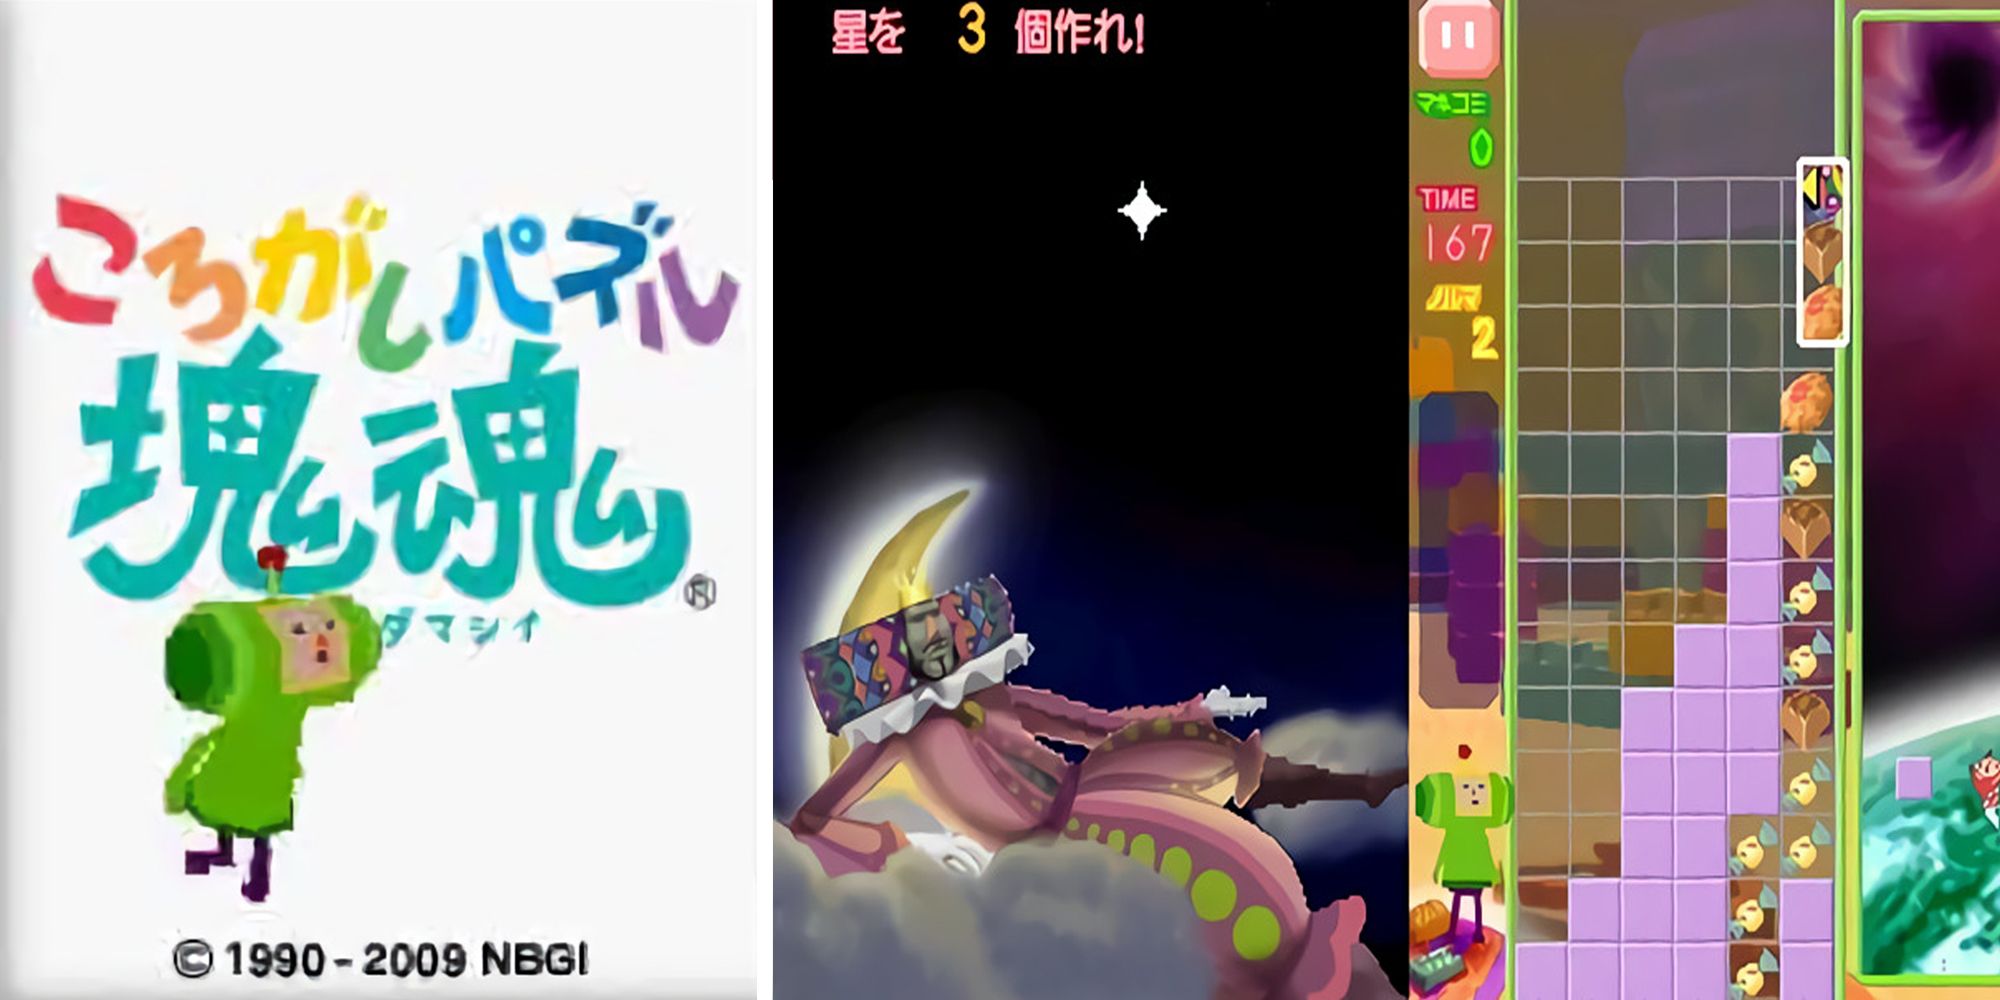 Loading Screen and Gameplay of Korogashi Puzzle Katamari Damacy